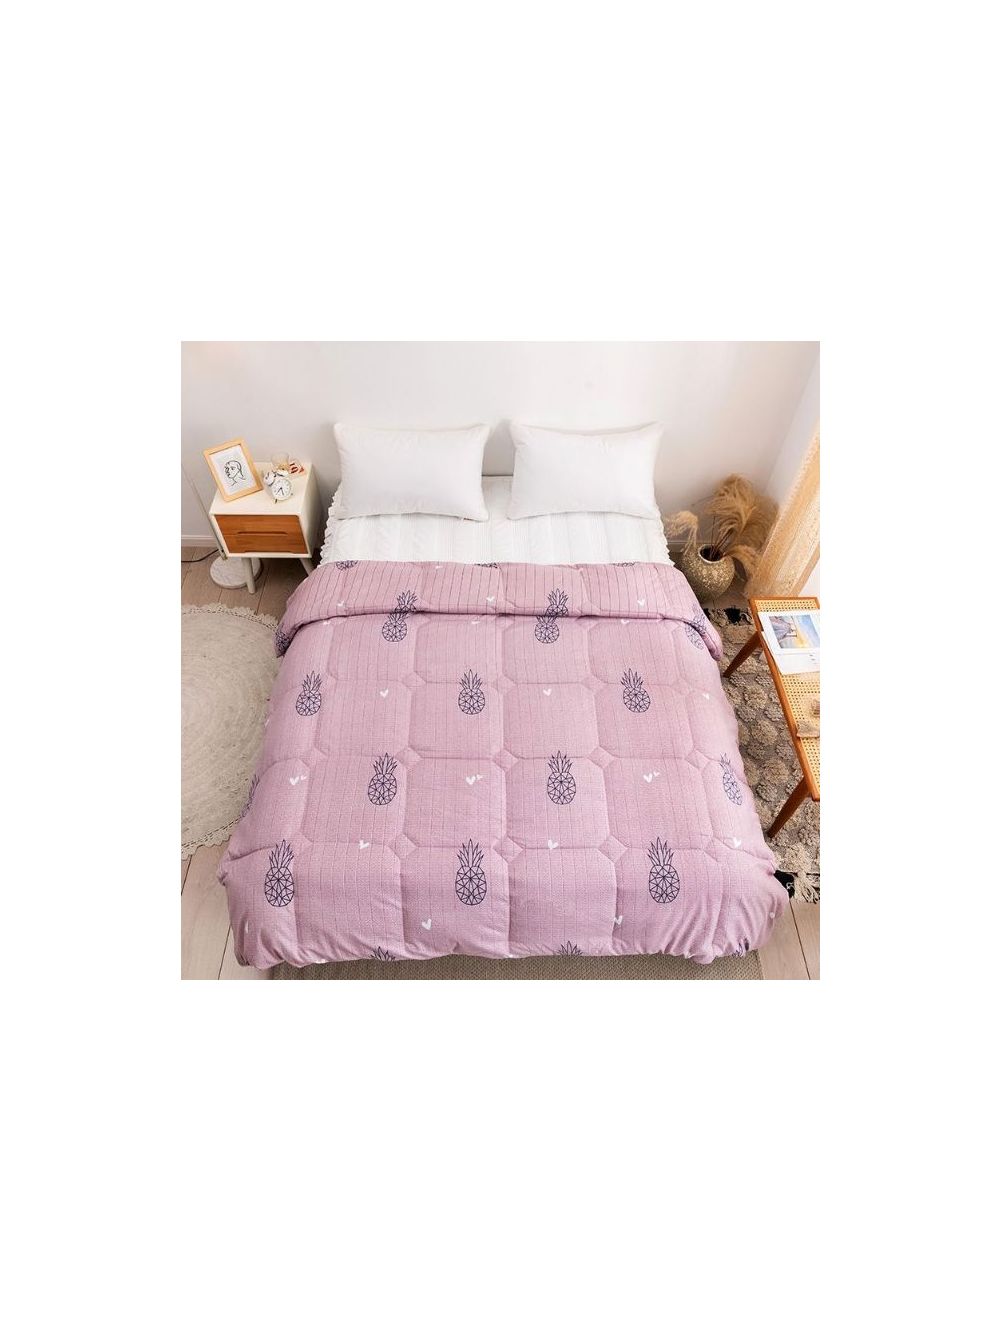 Rishahome Del Rio King Size Comforter Microfiber Multicolour 220x240cm-DRIC0003